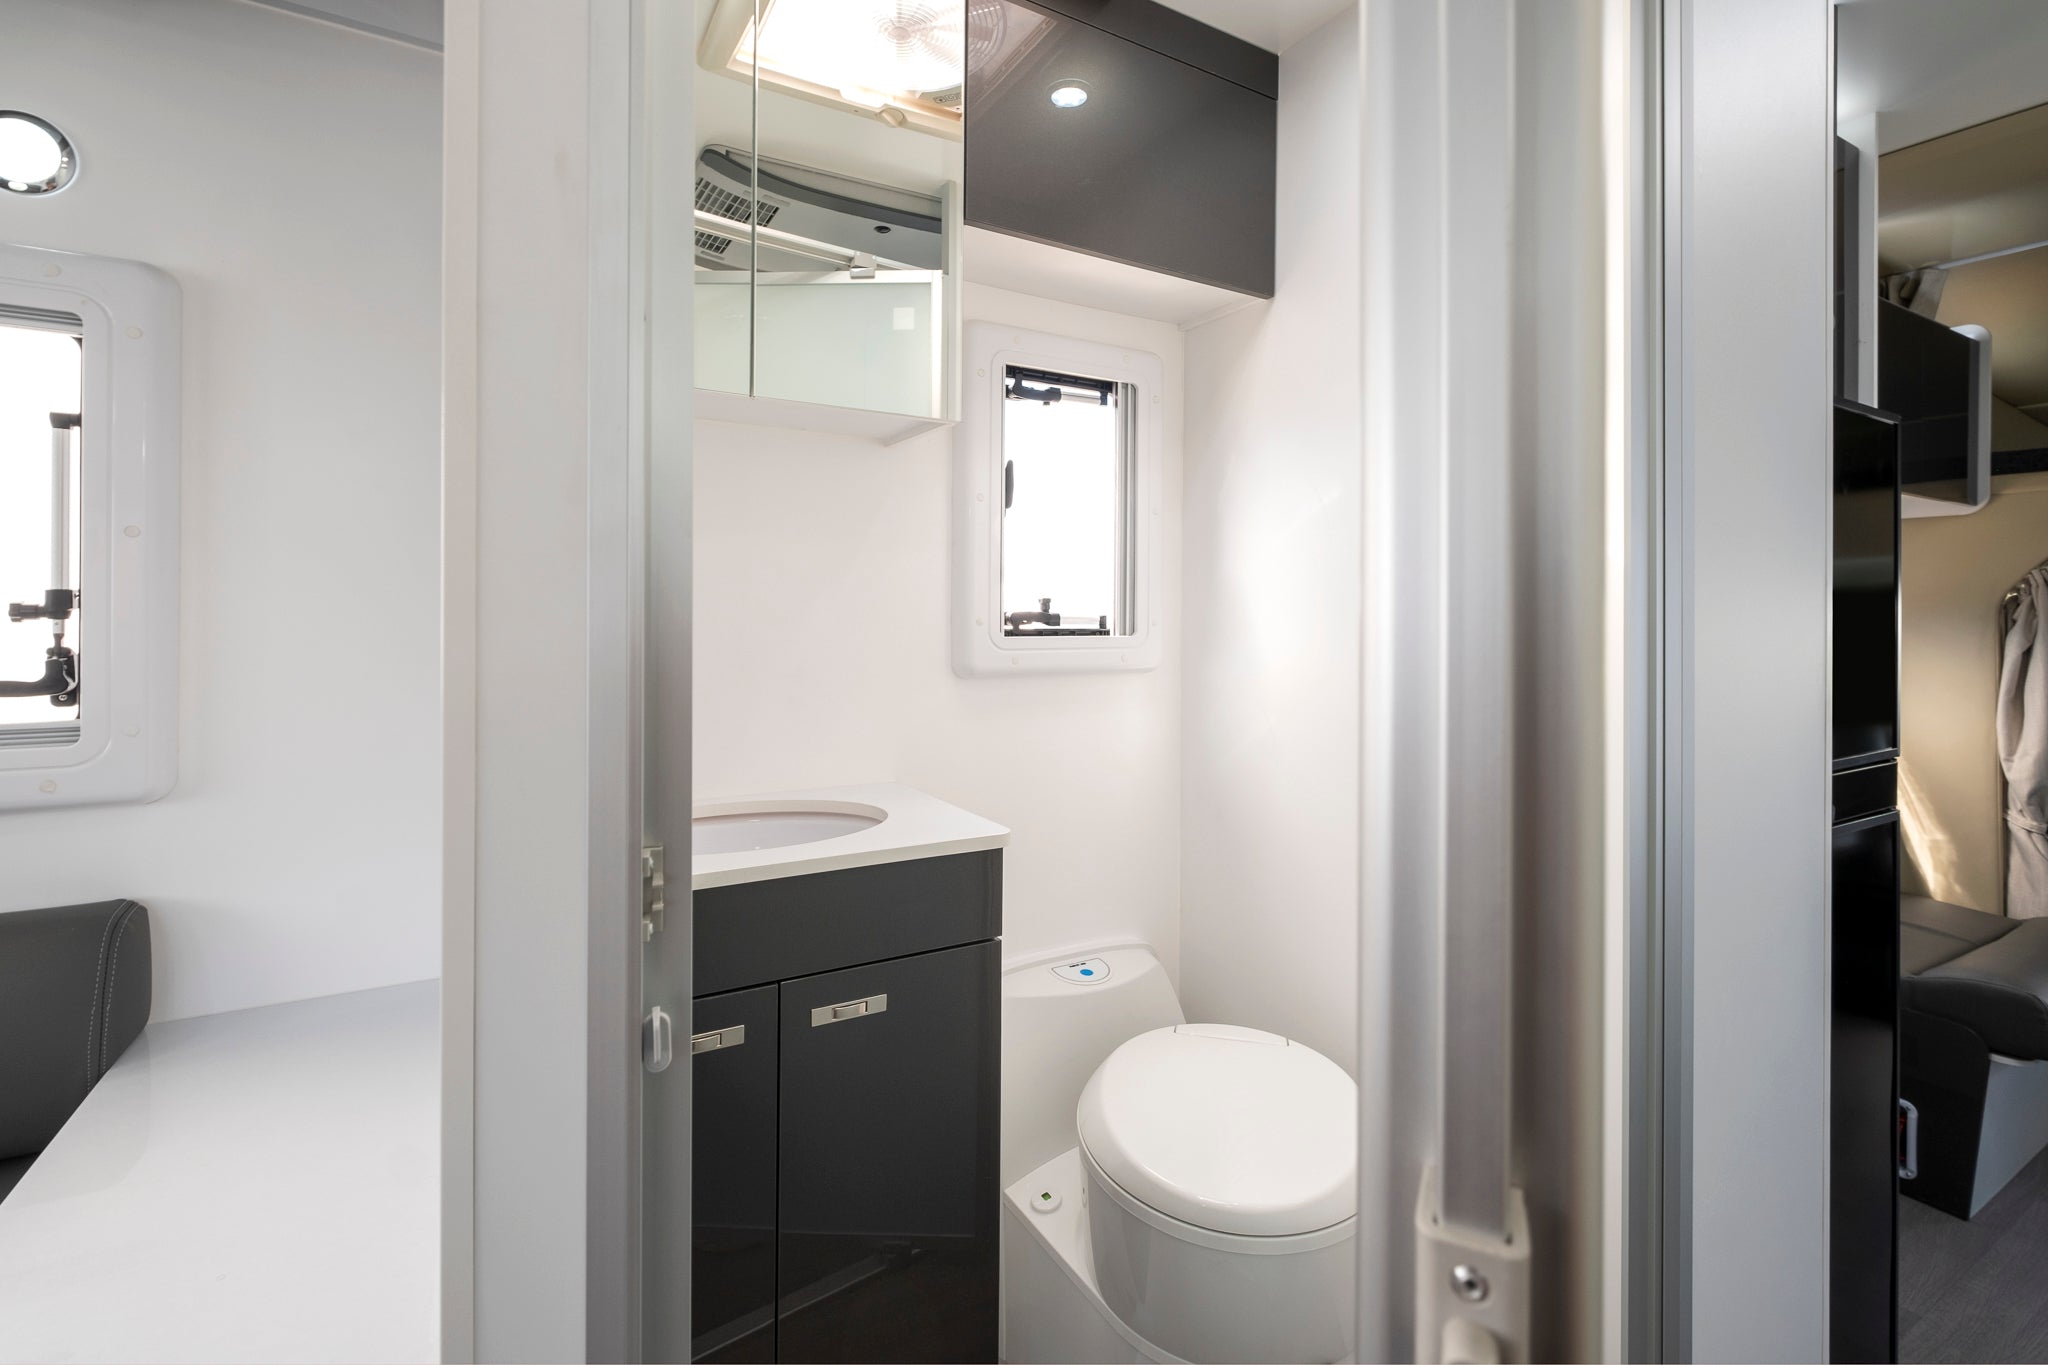 Windsor Flinders motorhome toilet and vanity